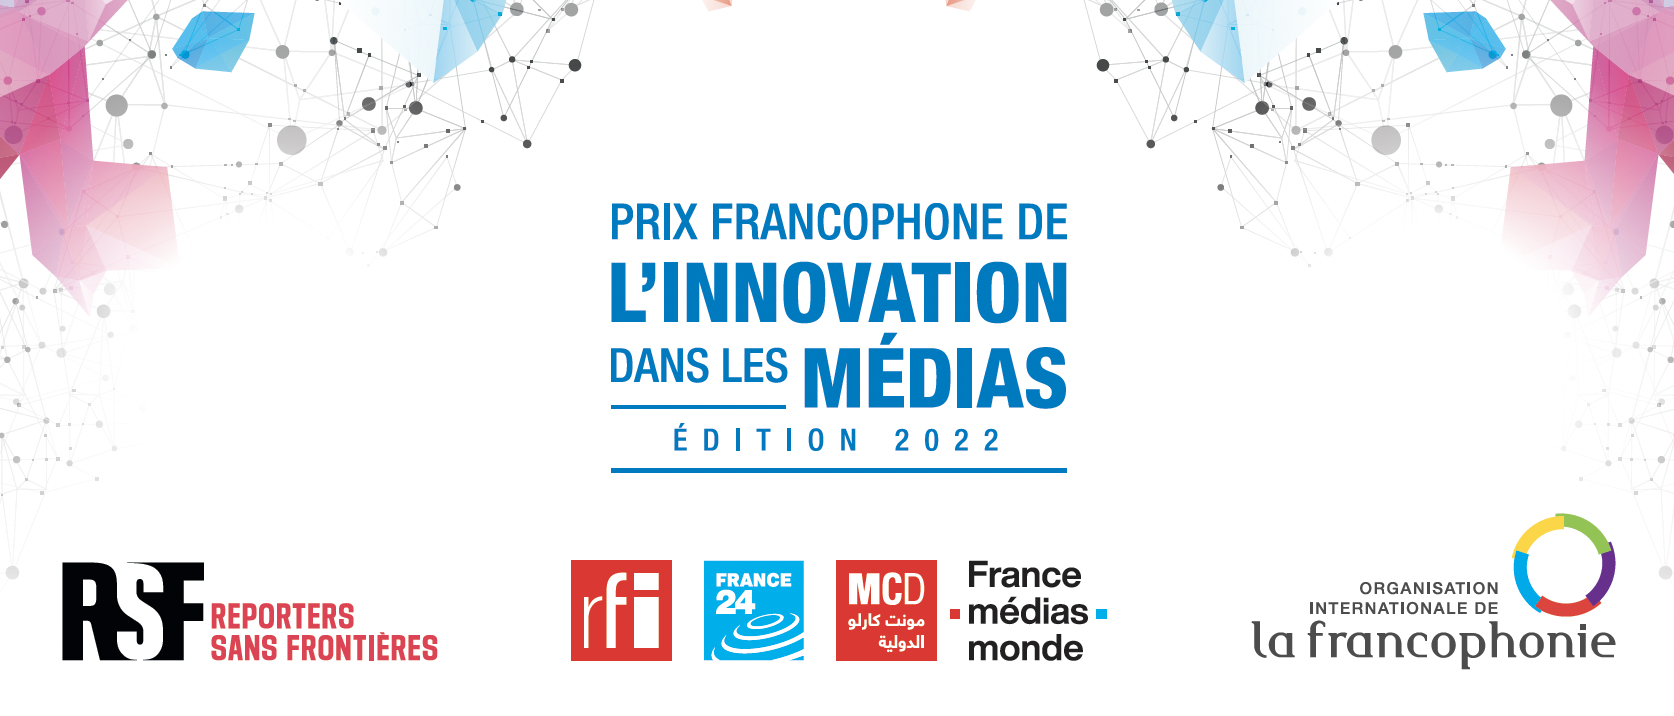 RFI : retour du prix francophone de l’innovation dans les médias